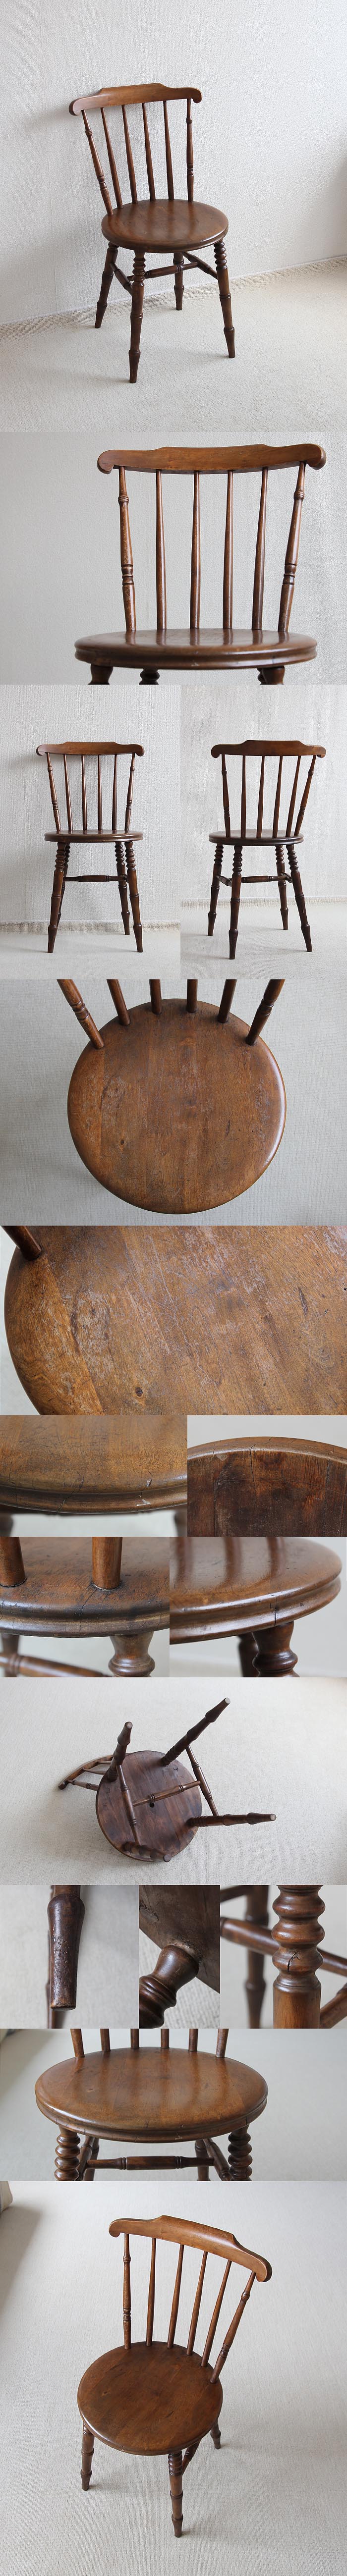 イギリス アンティーク アイベックスチェア ウインザー 古木 椅子 英国 家具「キッチンチェア」V-434